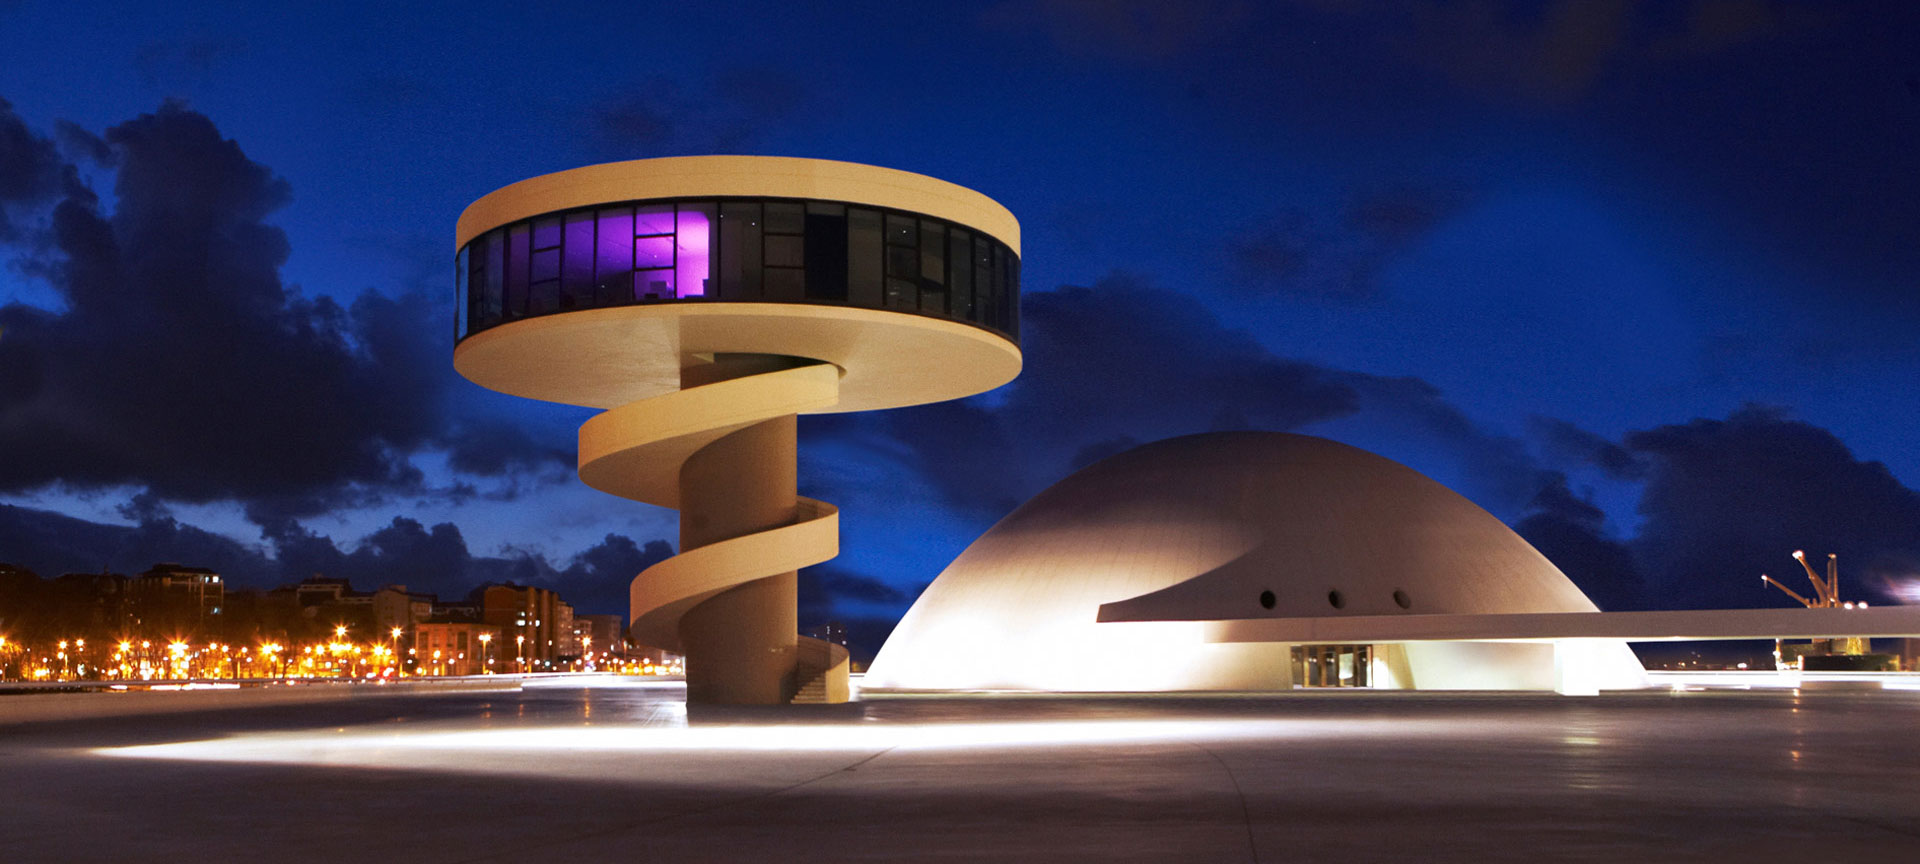 Moderne architectuur bij nacht in stadslandschap.